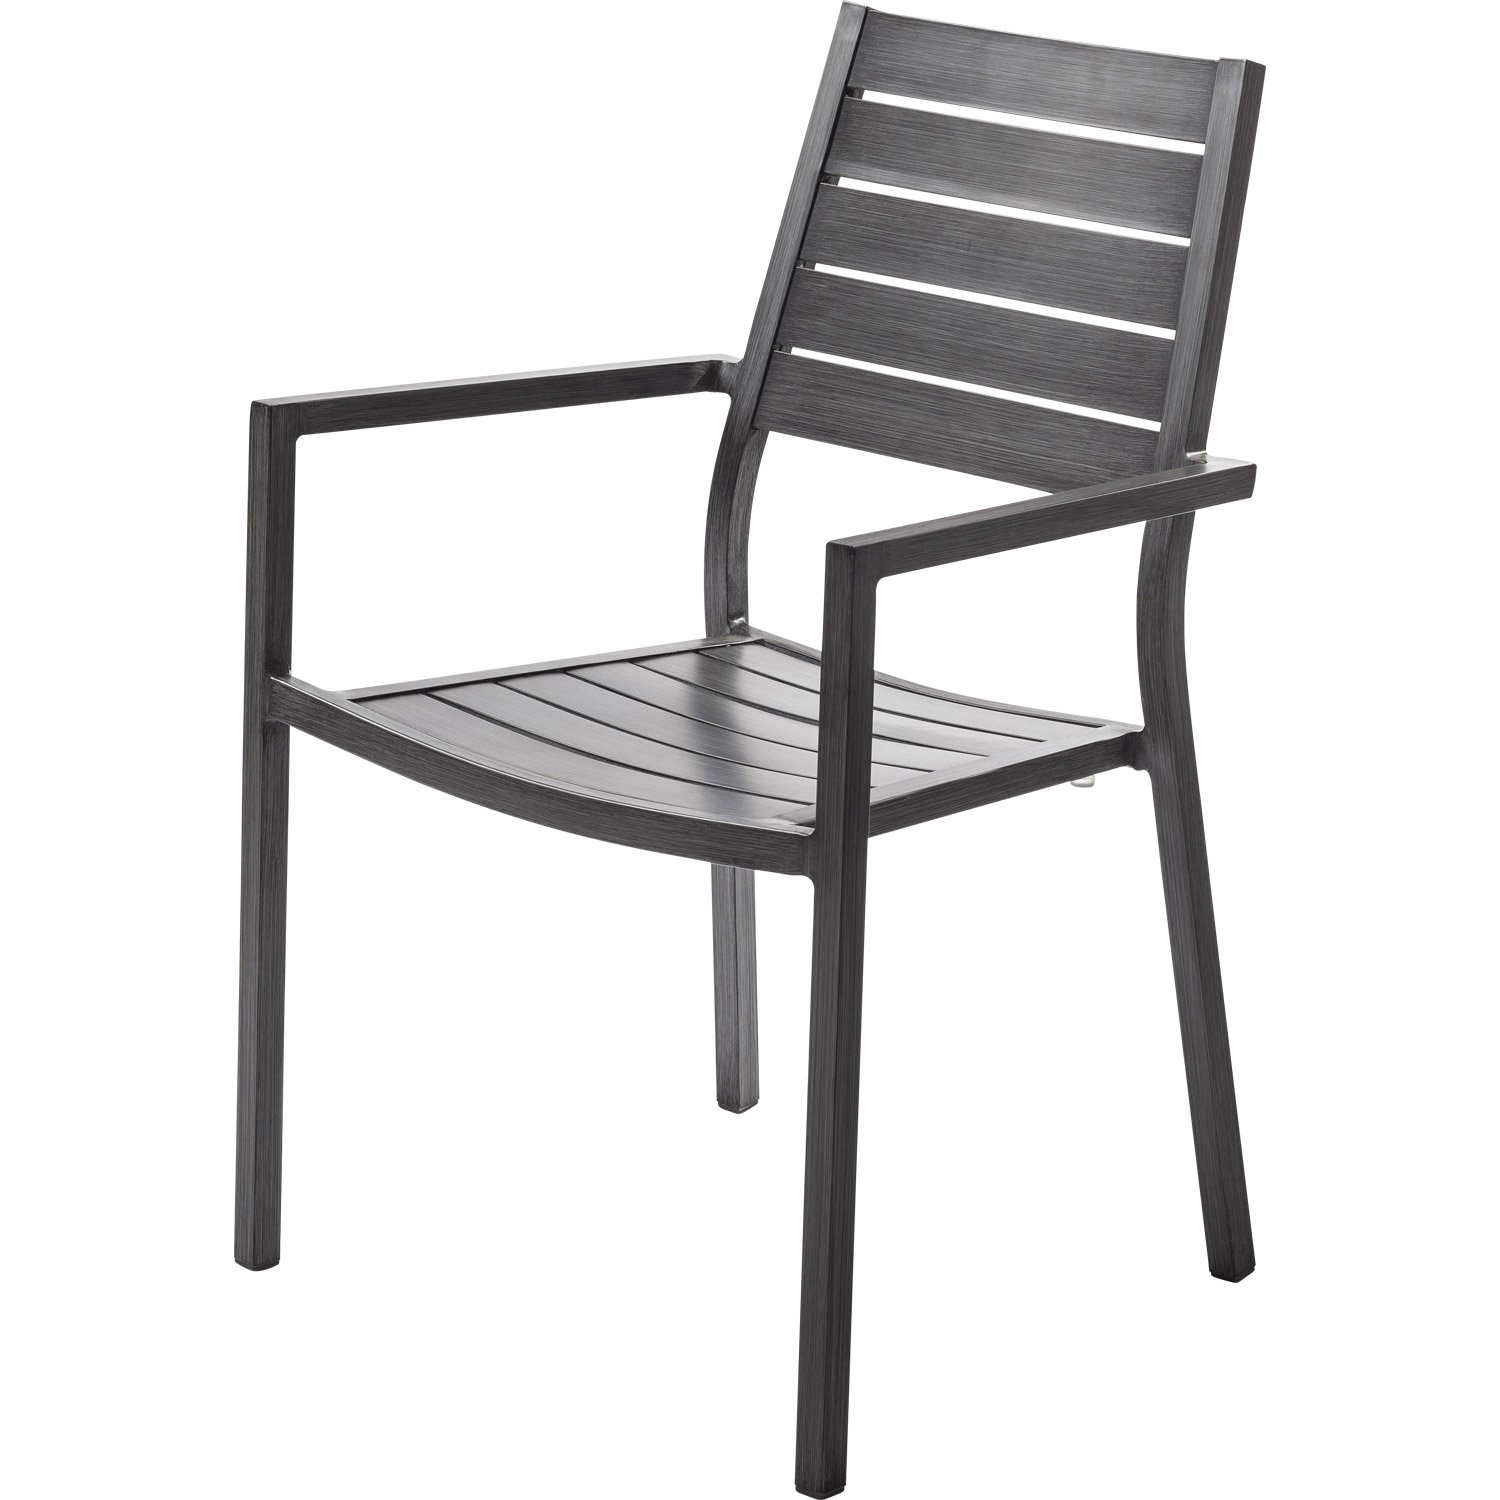 chaise et fauteuil de jardin avec en aluminium dans leroy merlin chaise et fauteuil de jardin 4 avec en aluminium antibes argent leroy merlin